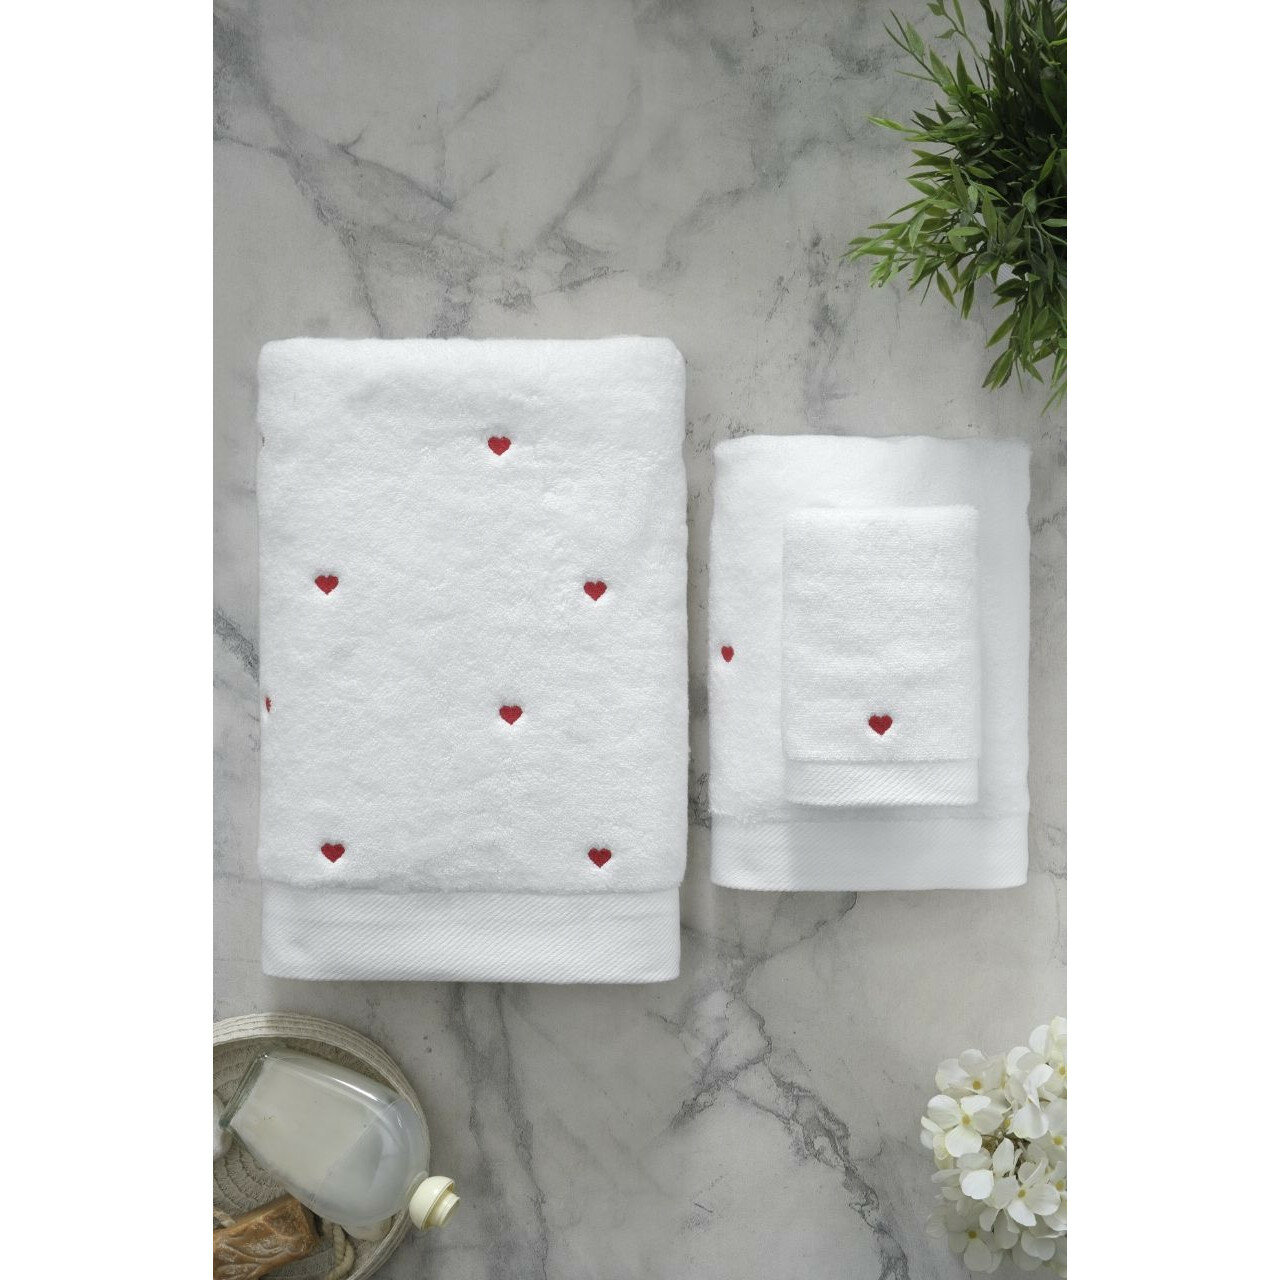 Soft cotton Полотенце Love цвет: белый, красный (50х100 см) - фотография № 7